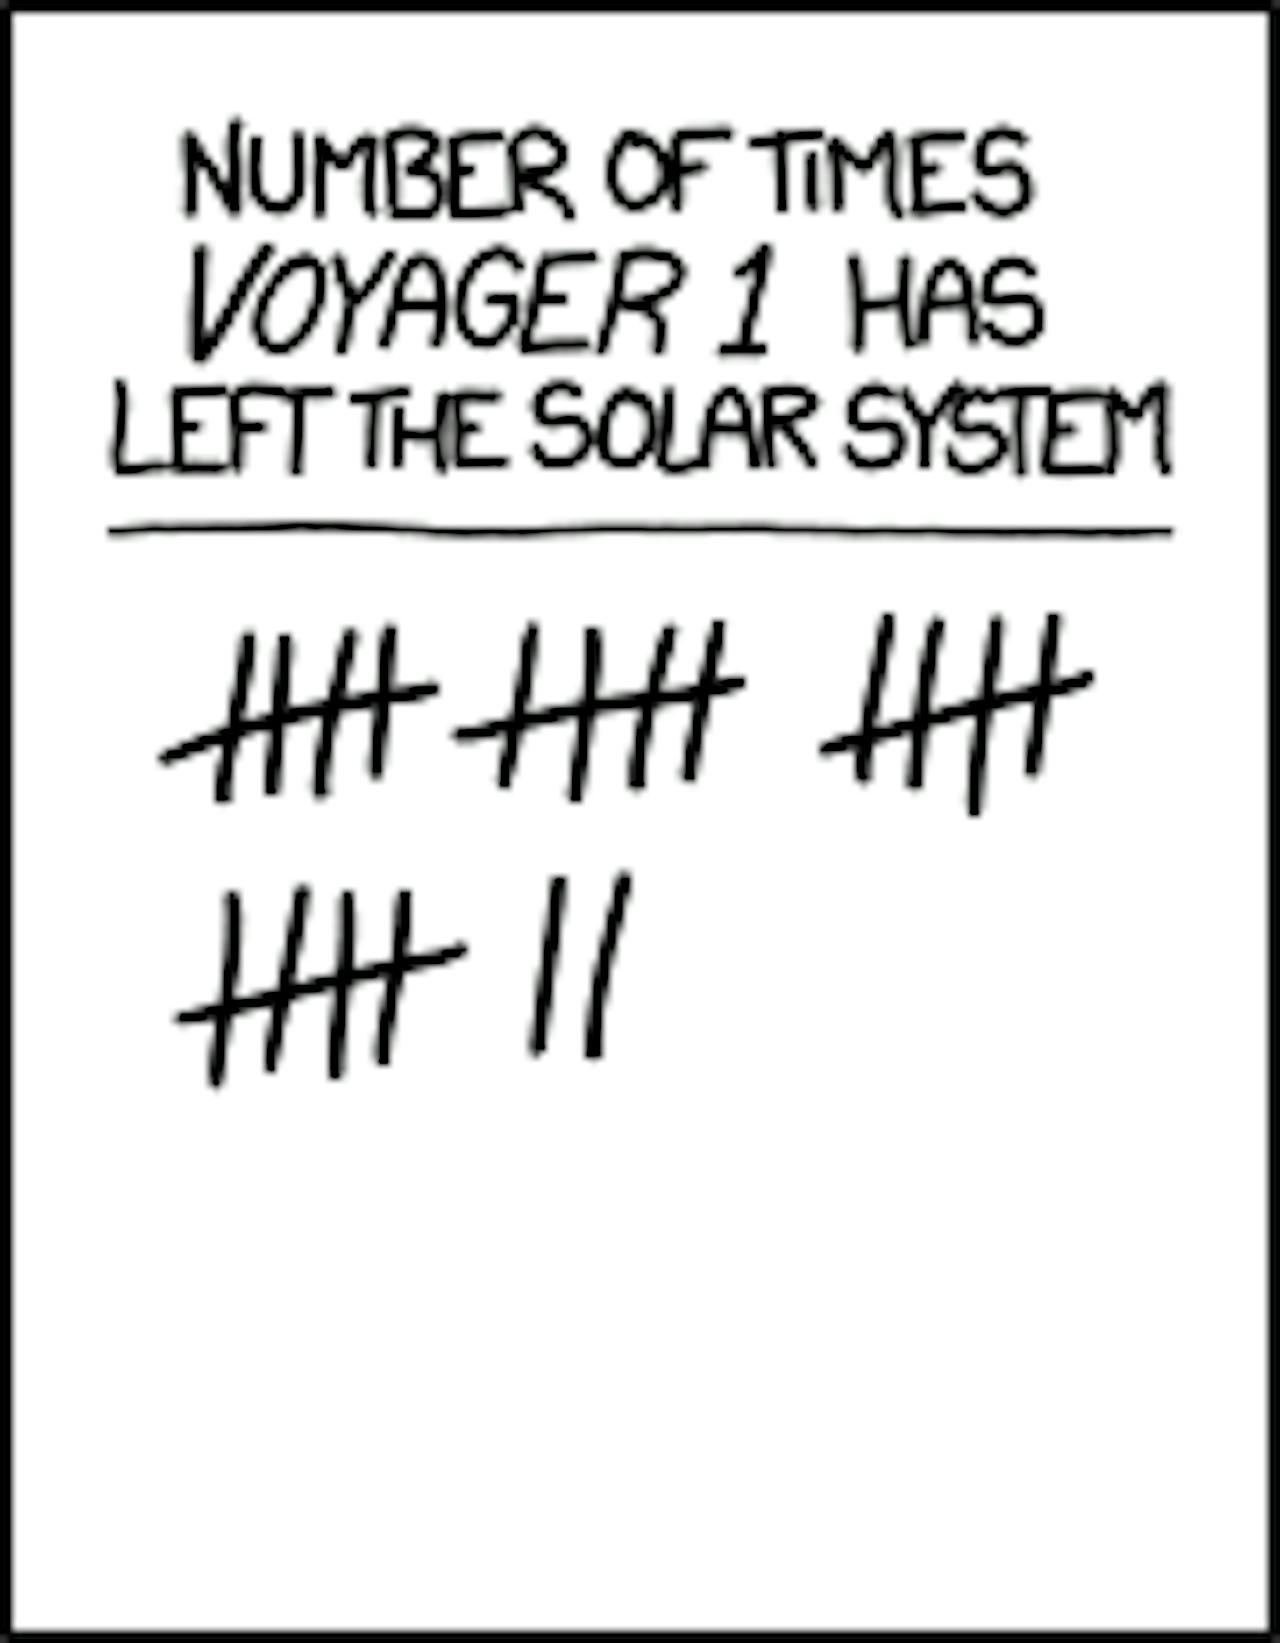 Aantal keren dat voyager het zonnestelsel heeft verlaten. Er zijn 22 streeepjes geturfd.